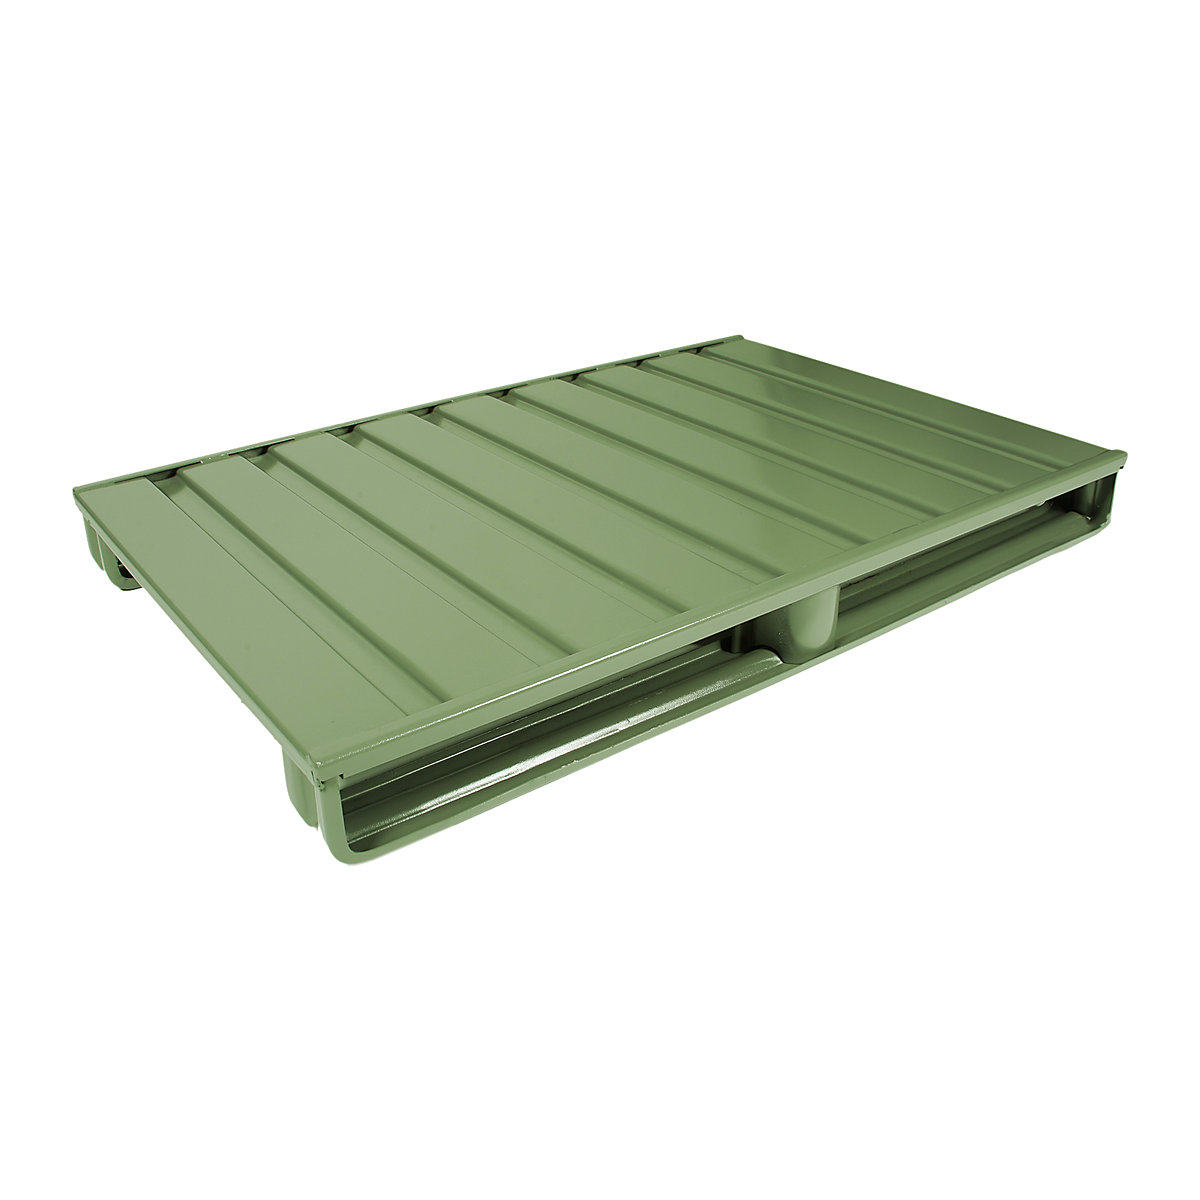 Čelična ravna paleta – Heson, DxŠ 1200 x 1000 mm, nosivost 1500 kg, u rezeda zelenoj boji, od 10 kom.-3